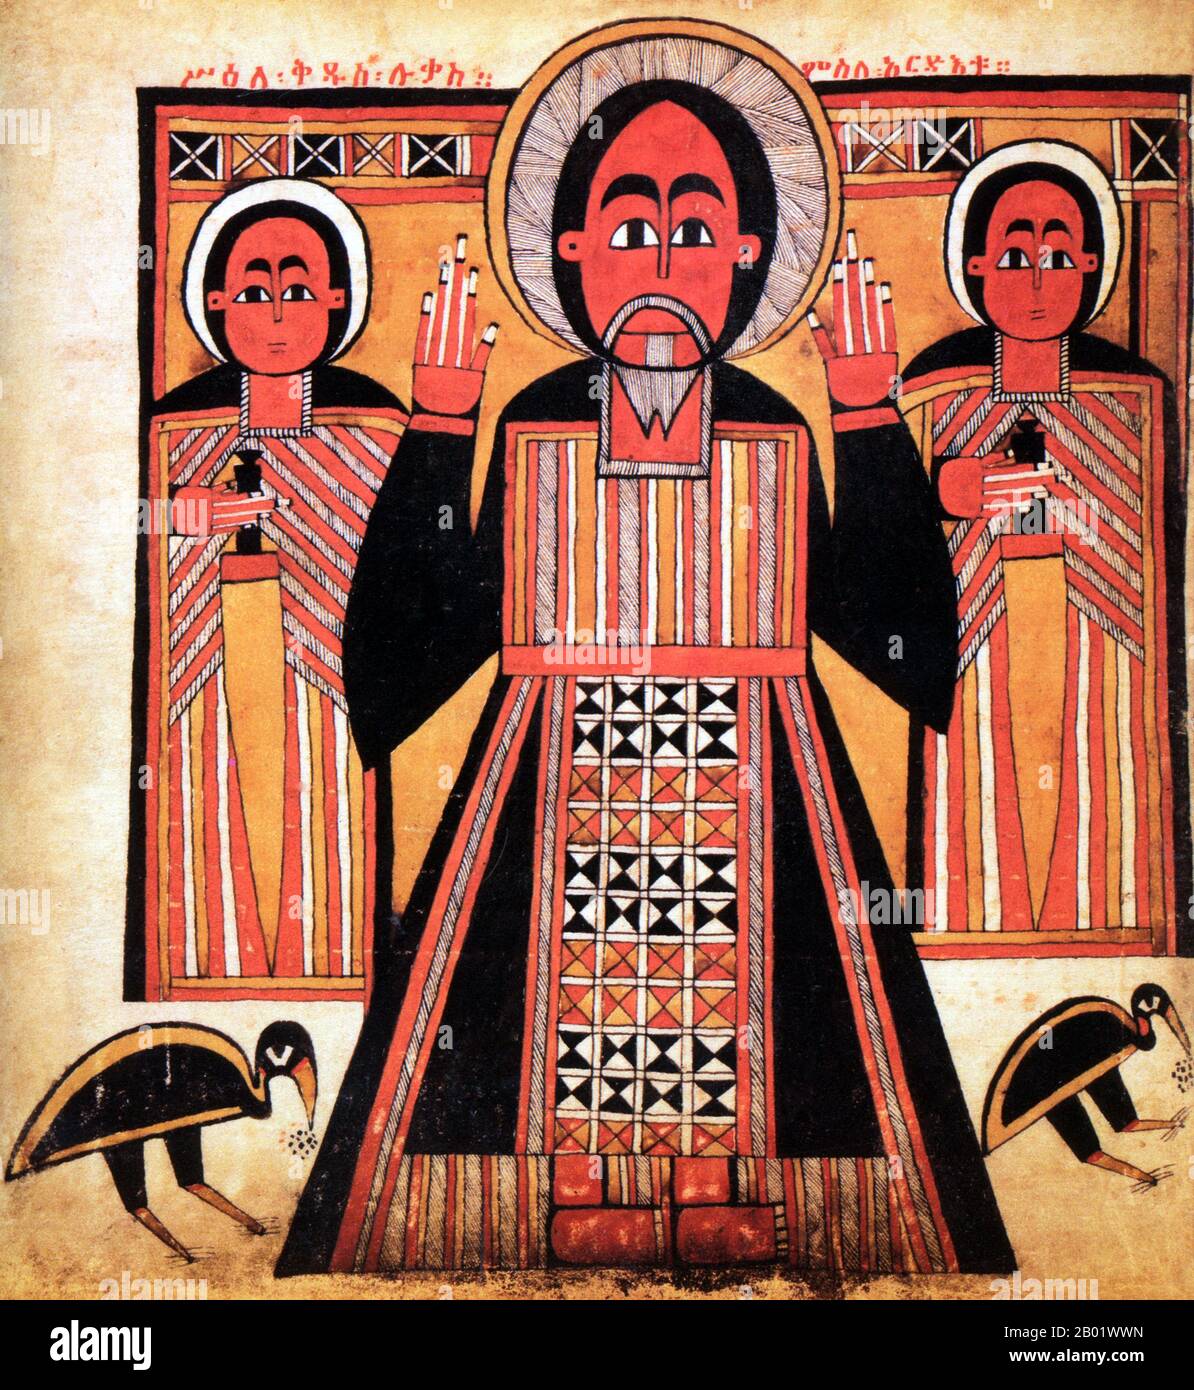 Le christianisme en Ethiopie date de la première AD du siècle, et cette longue tradition rend l'Ethiopie unique parmi les pays d'Afrique subsaharienne. Le christianisme dans ce pays est divisé en plusieurs groupes. La plus grande et la plus ancienne est l'église éthiopienne orthodoxe Tewahedo (dans Amharic: የኢትዮጵያ ኦርቶዶክስ ተዋሕዶ ቤተክርስትያን Yäityop'ya ortodoks täwahedo bétäkrestyan) qui est une église orthodoxe orientale en Ethiopie qui faisait partie de l'Eglise orthodoxe copte jusqu'en 1959, quand il a été accordé son propre Patriarche par le Pape orthodoxe copte d'Alexandrie et Patriarche De Toute l'Afrique Cyril VI Le seul chrétien pré-colonial Banque D'Images